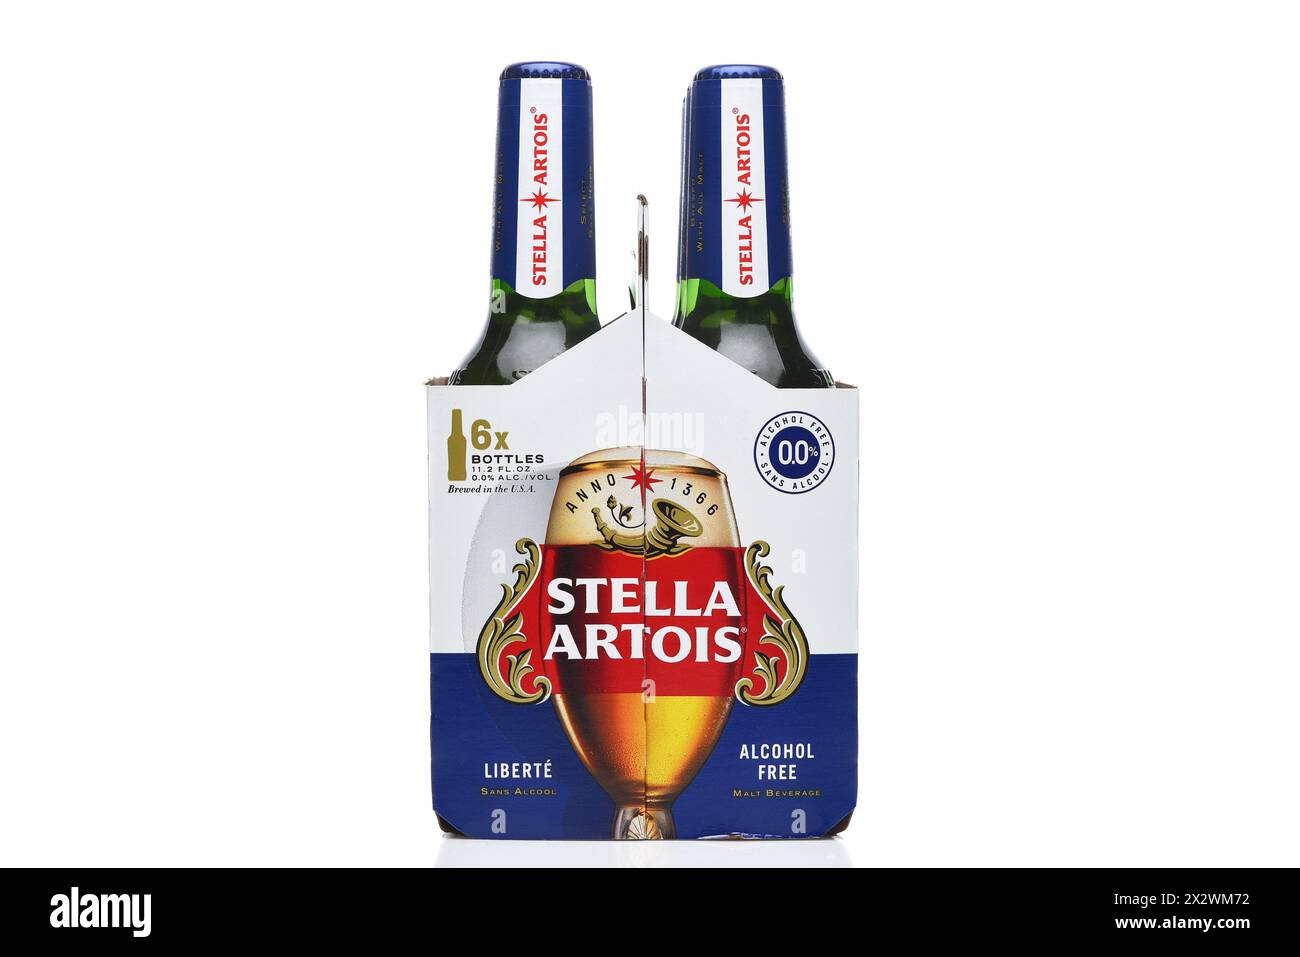 IRVINE, CALIFORNIA - 23 aprile 2024: Vista finale di una confezione da 6 di Stella Artois Liberte, una birra senza alcol. Foto Stock